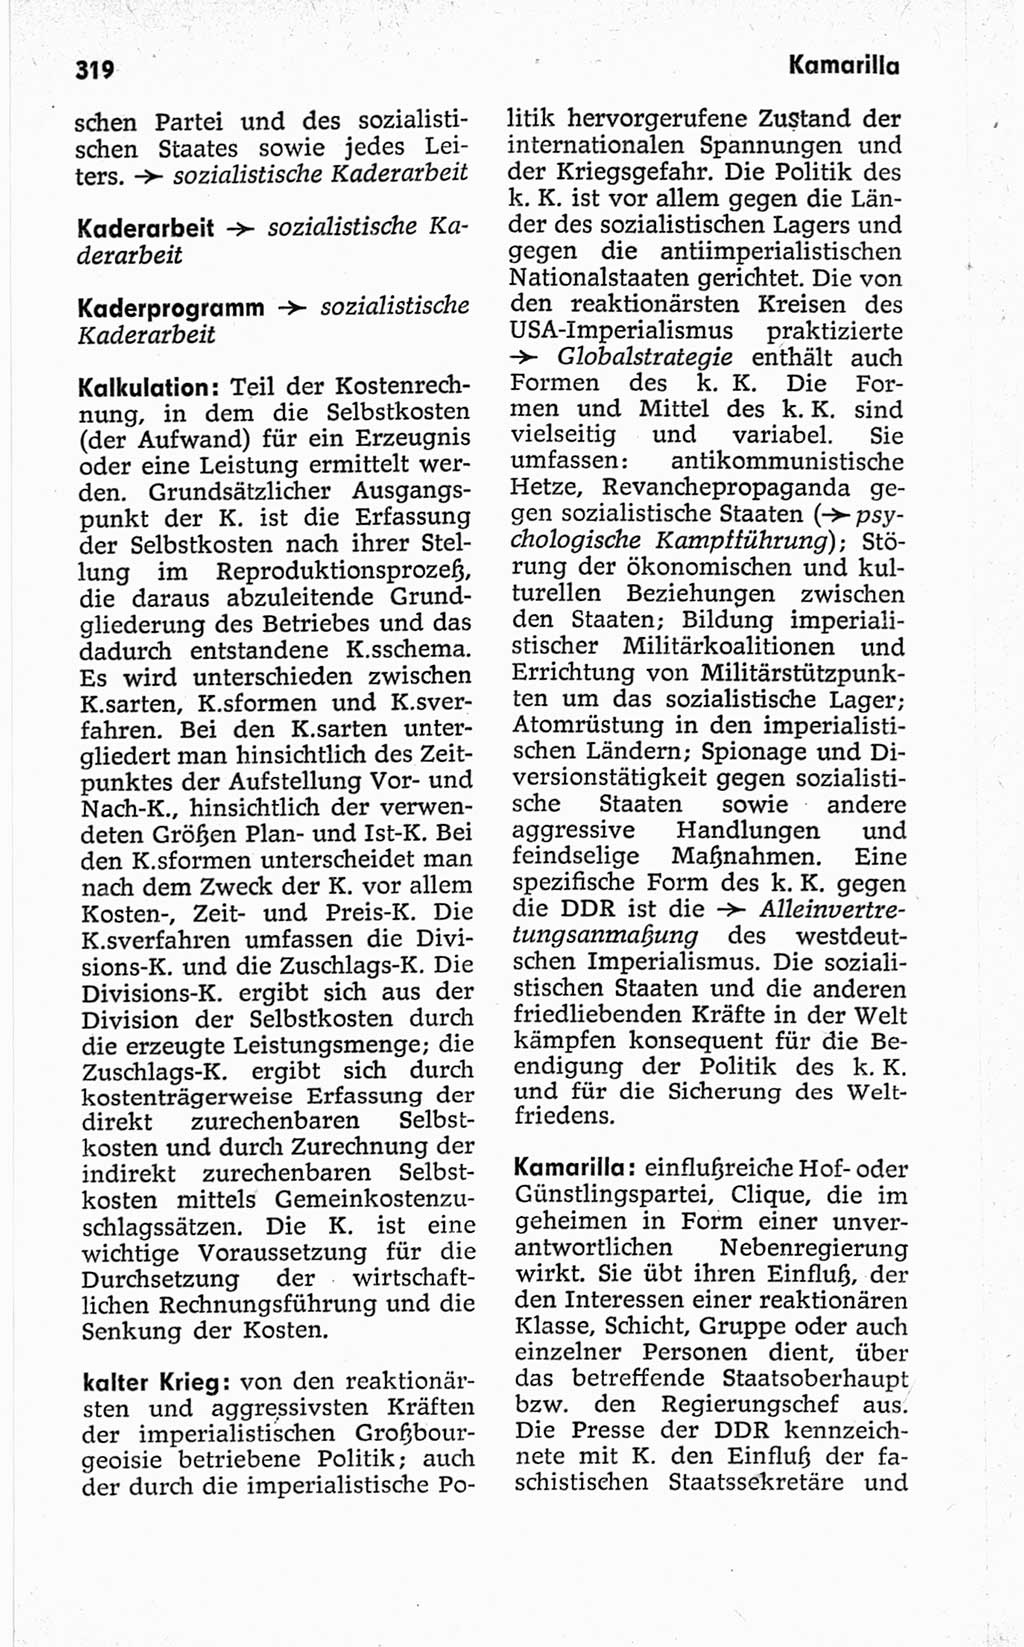 Kleines politisches Wörterbuch [Deutsche Demokratische Republik (DDR)] 1967, Seite 319 (Kl. pol. Wb. DDR 1967, S. 319)